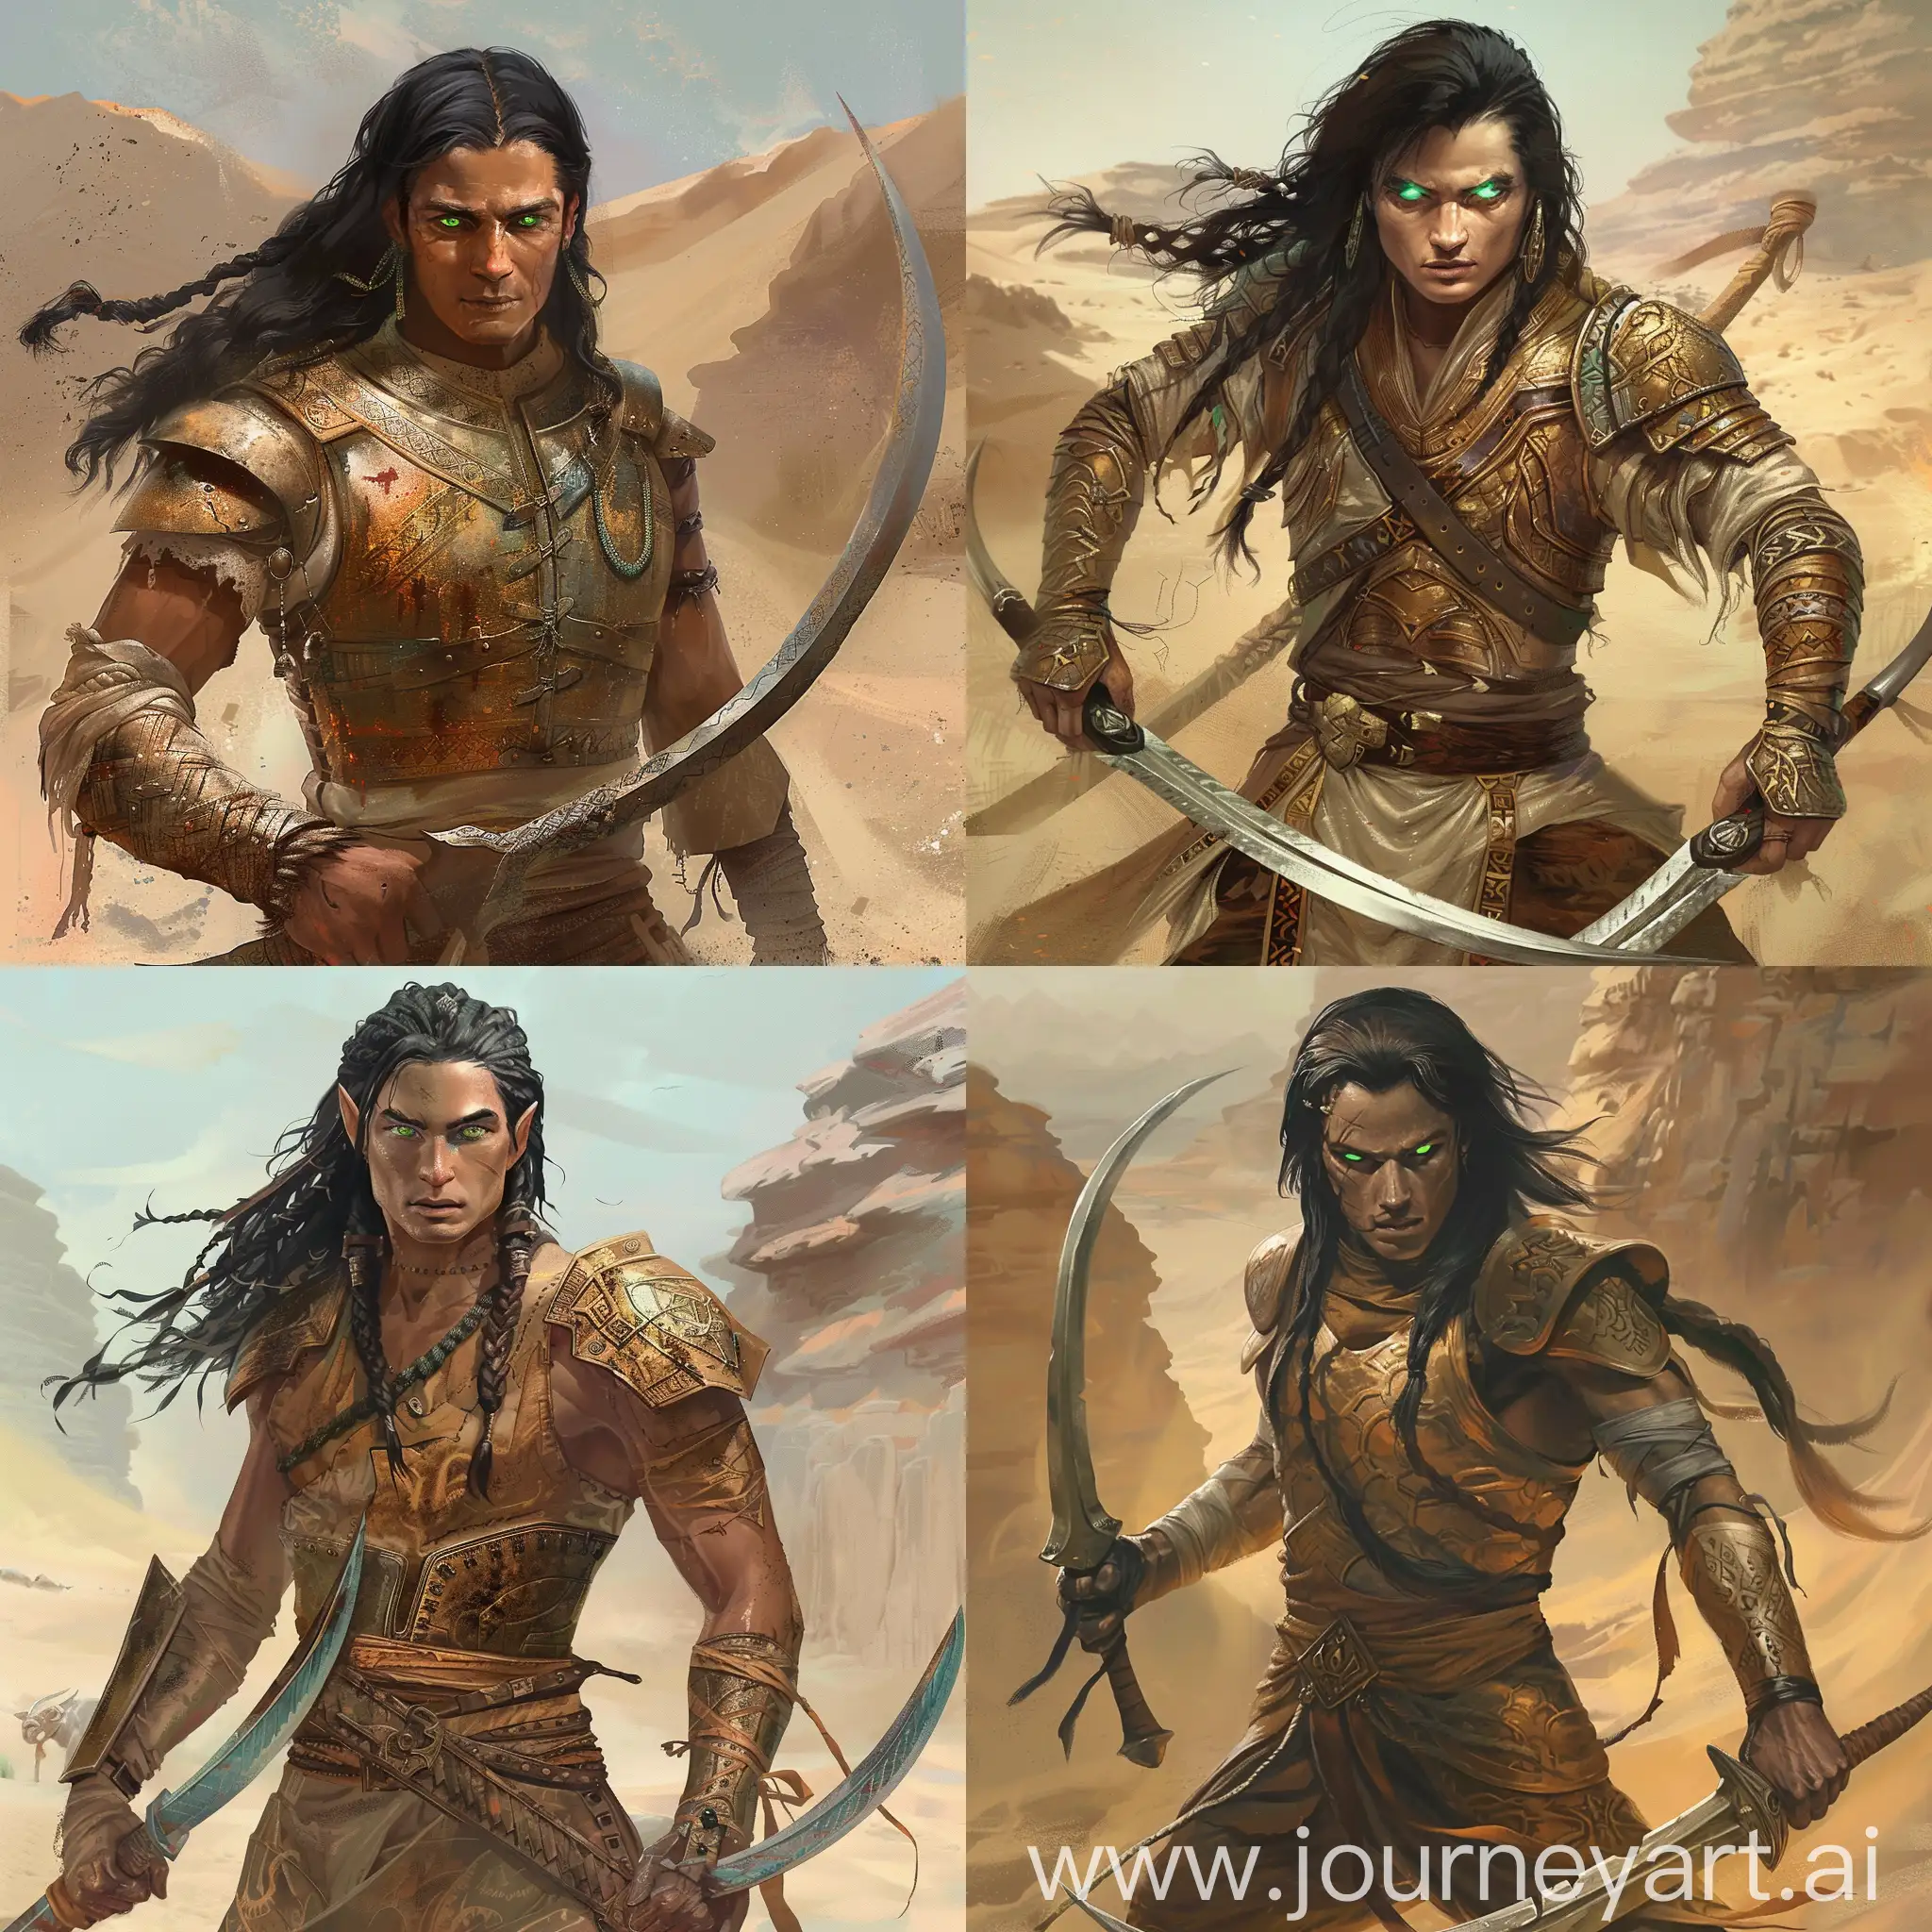 Courageous-Warrior-Elarion-Wielding-Tribal-Blades-in-Centara-Desert